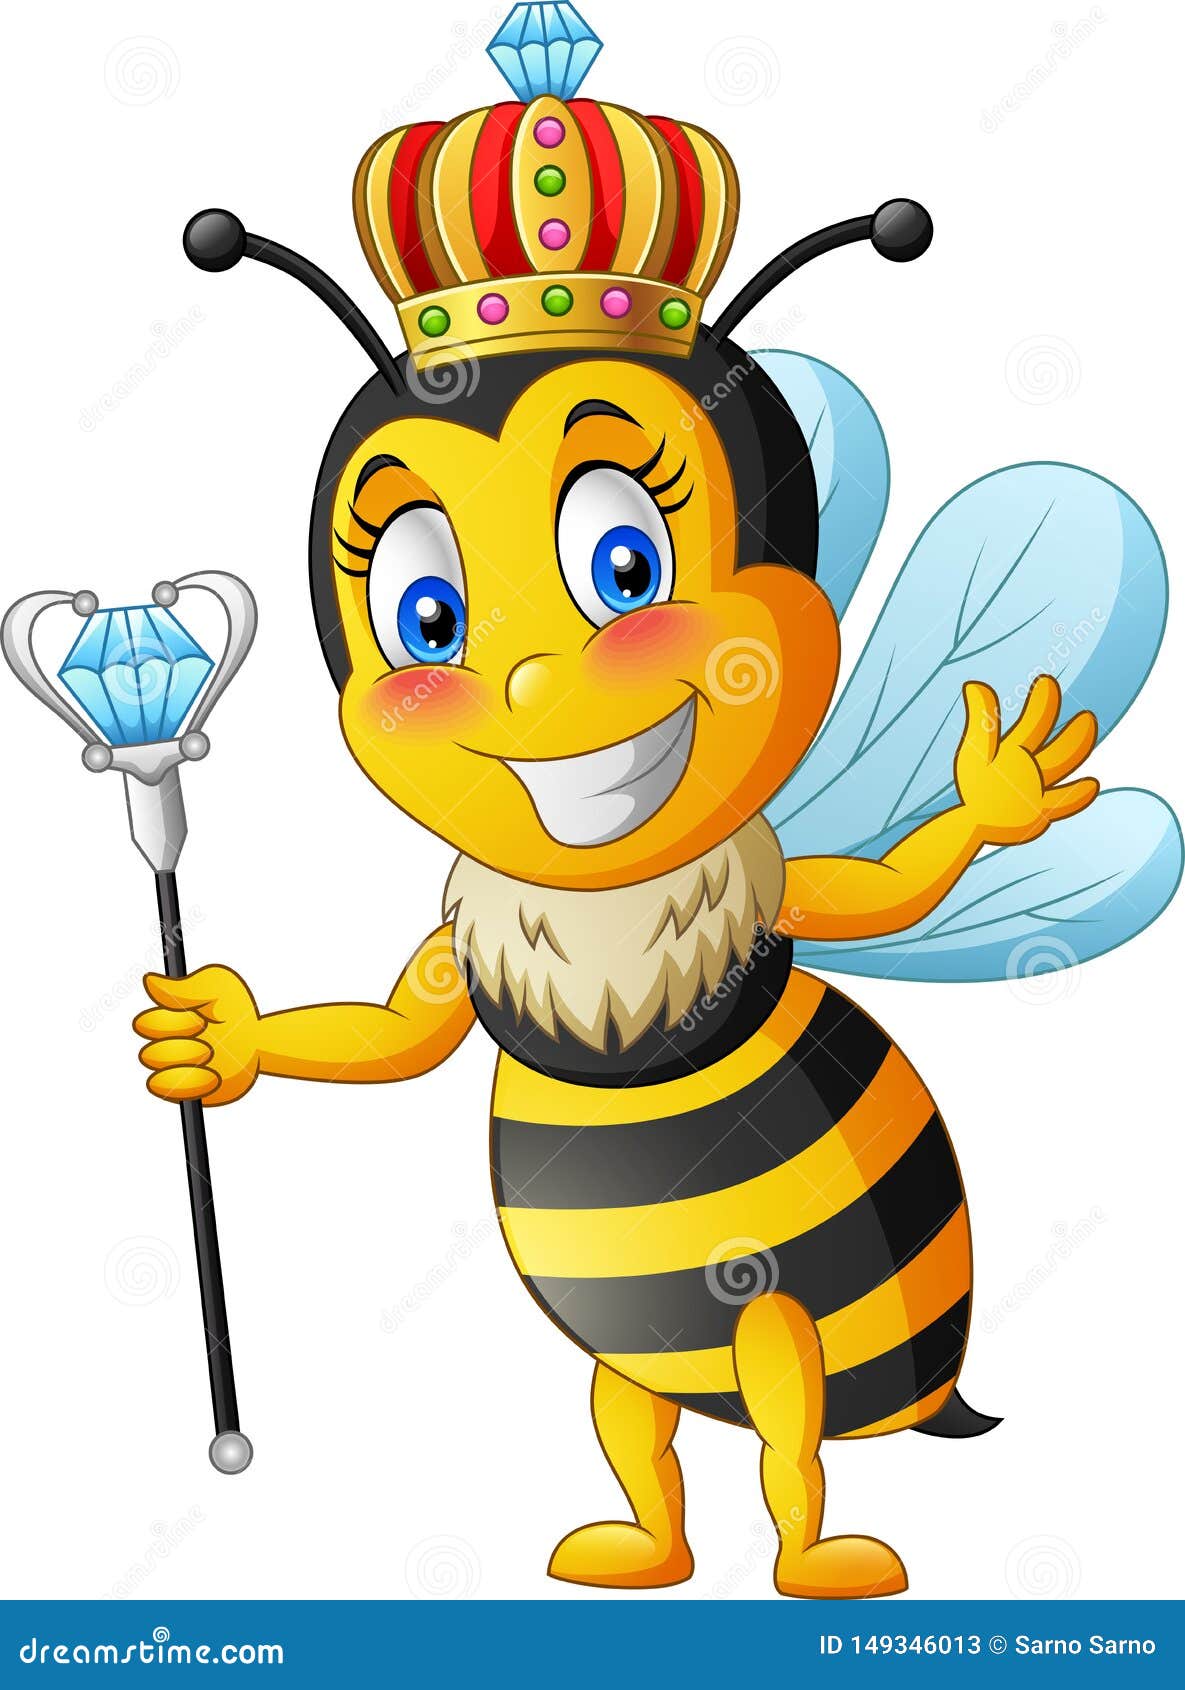 Queen bee cartoon stock vector. Illustration of bees - 149346013